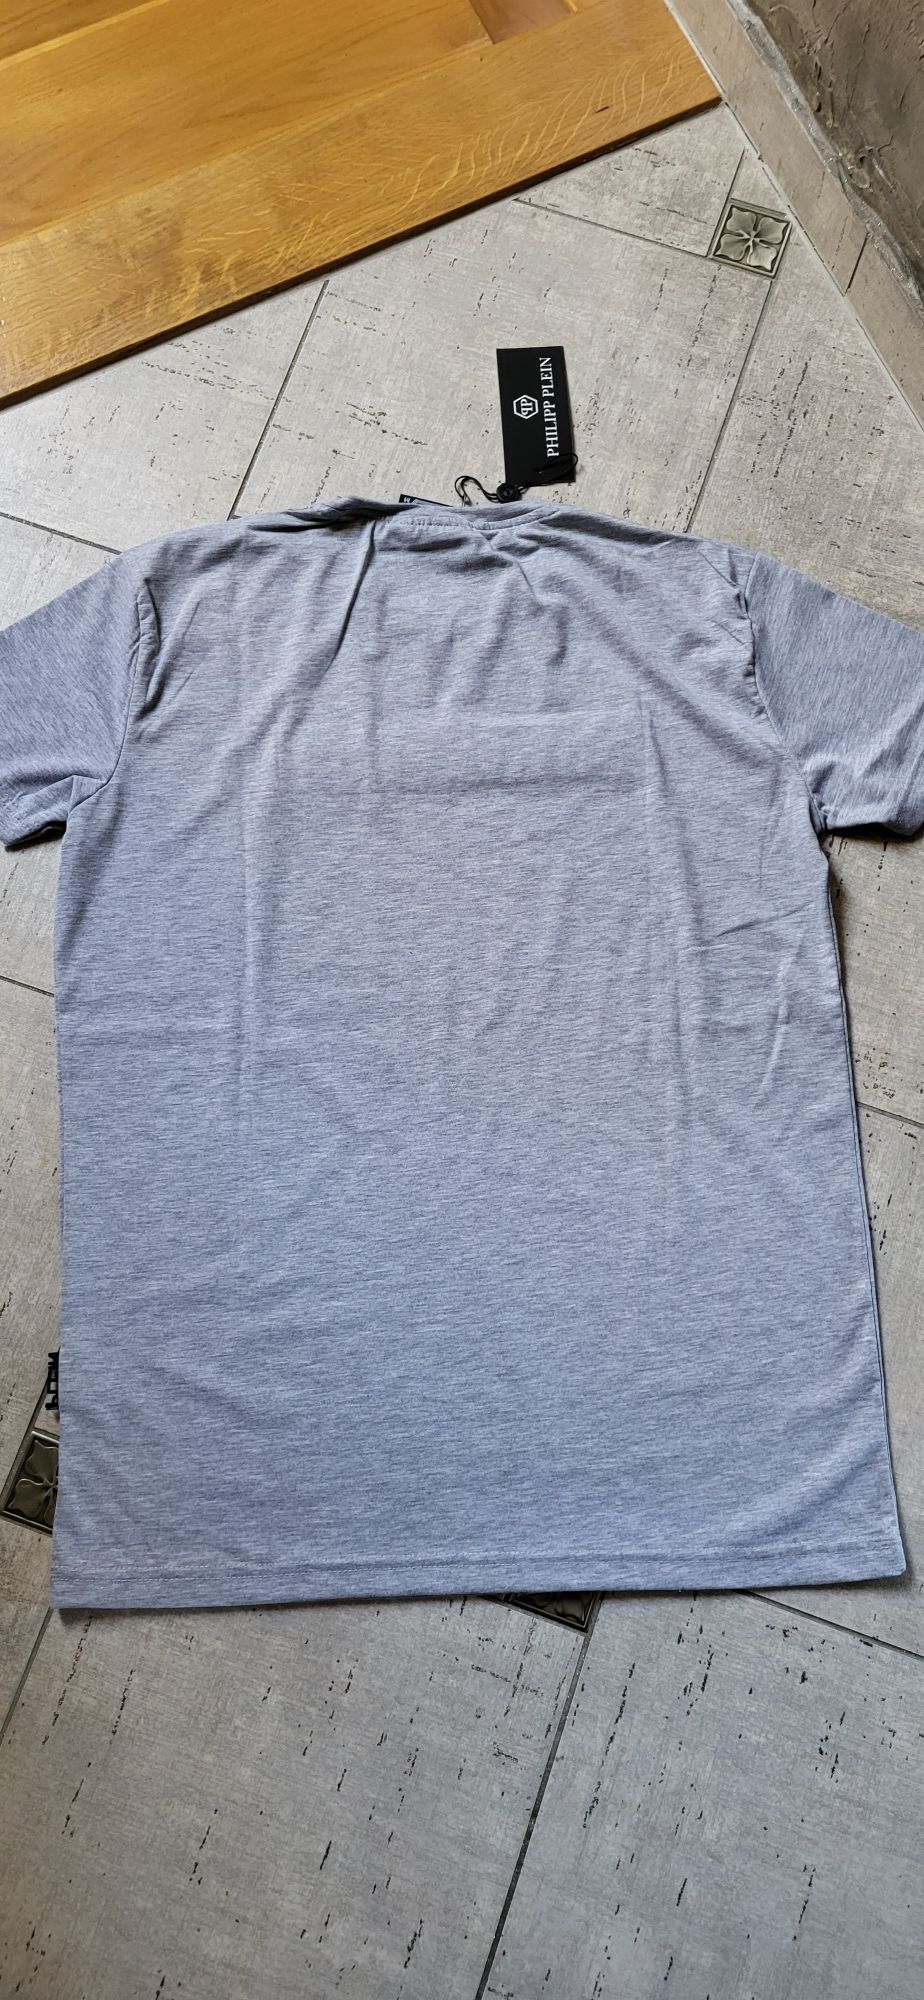 Szara koszulka męska bawełna t-shirt premium PP M